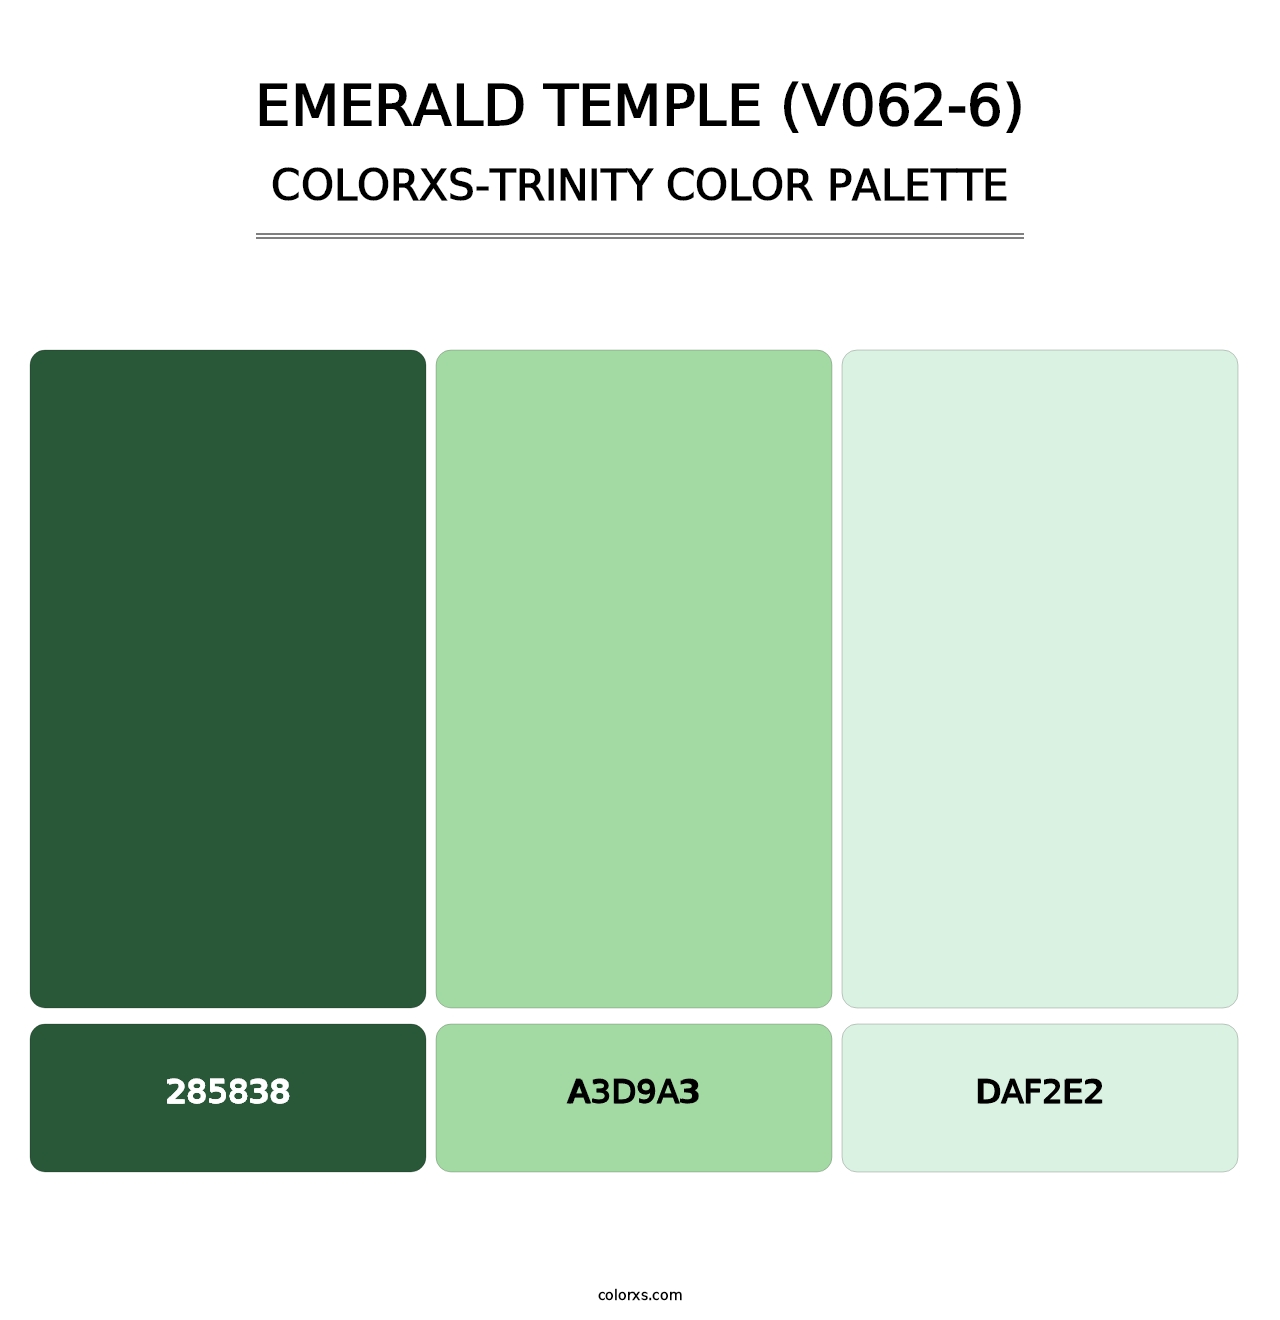 Emerald Temple (V062-6) - Colorxs Trinity Palette